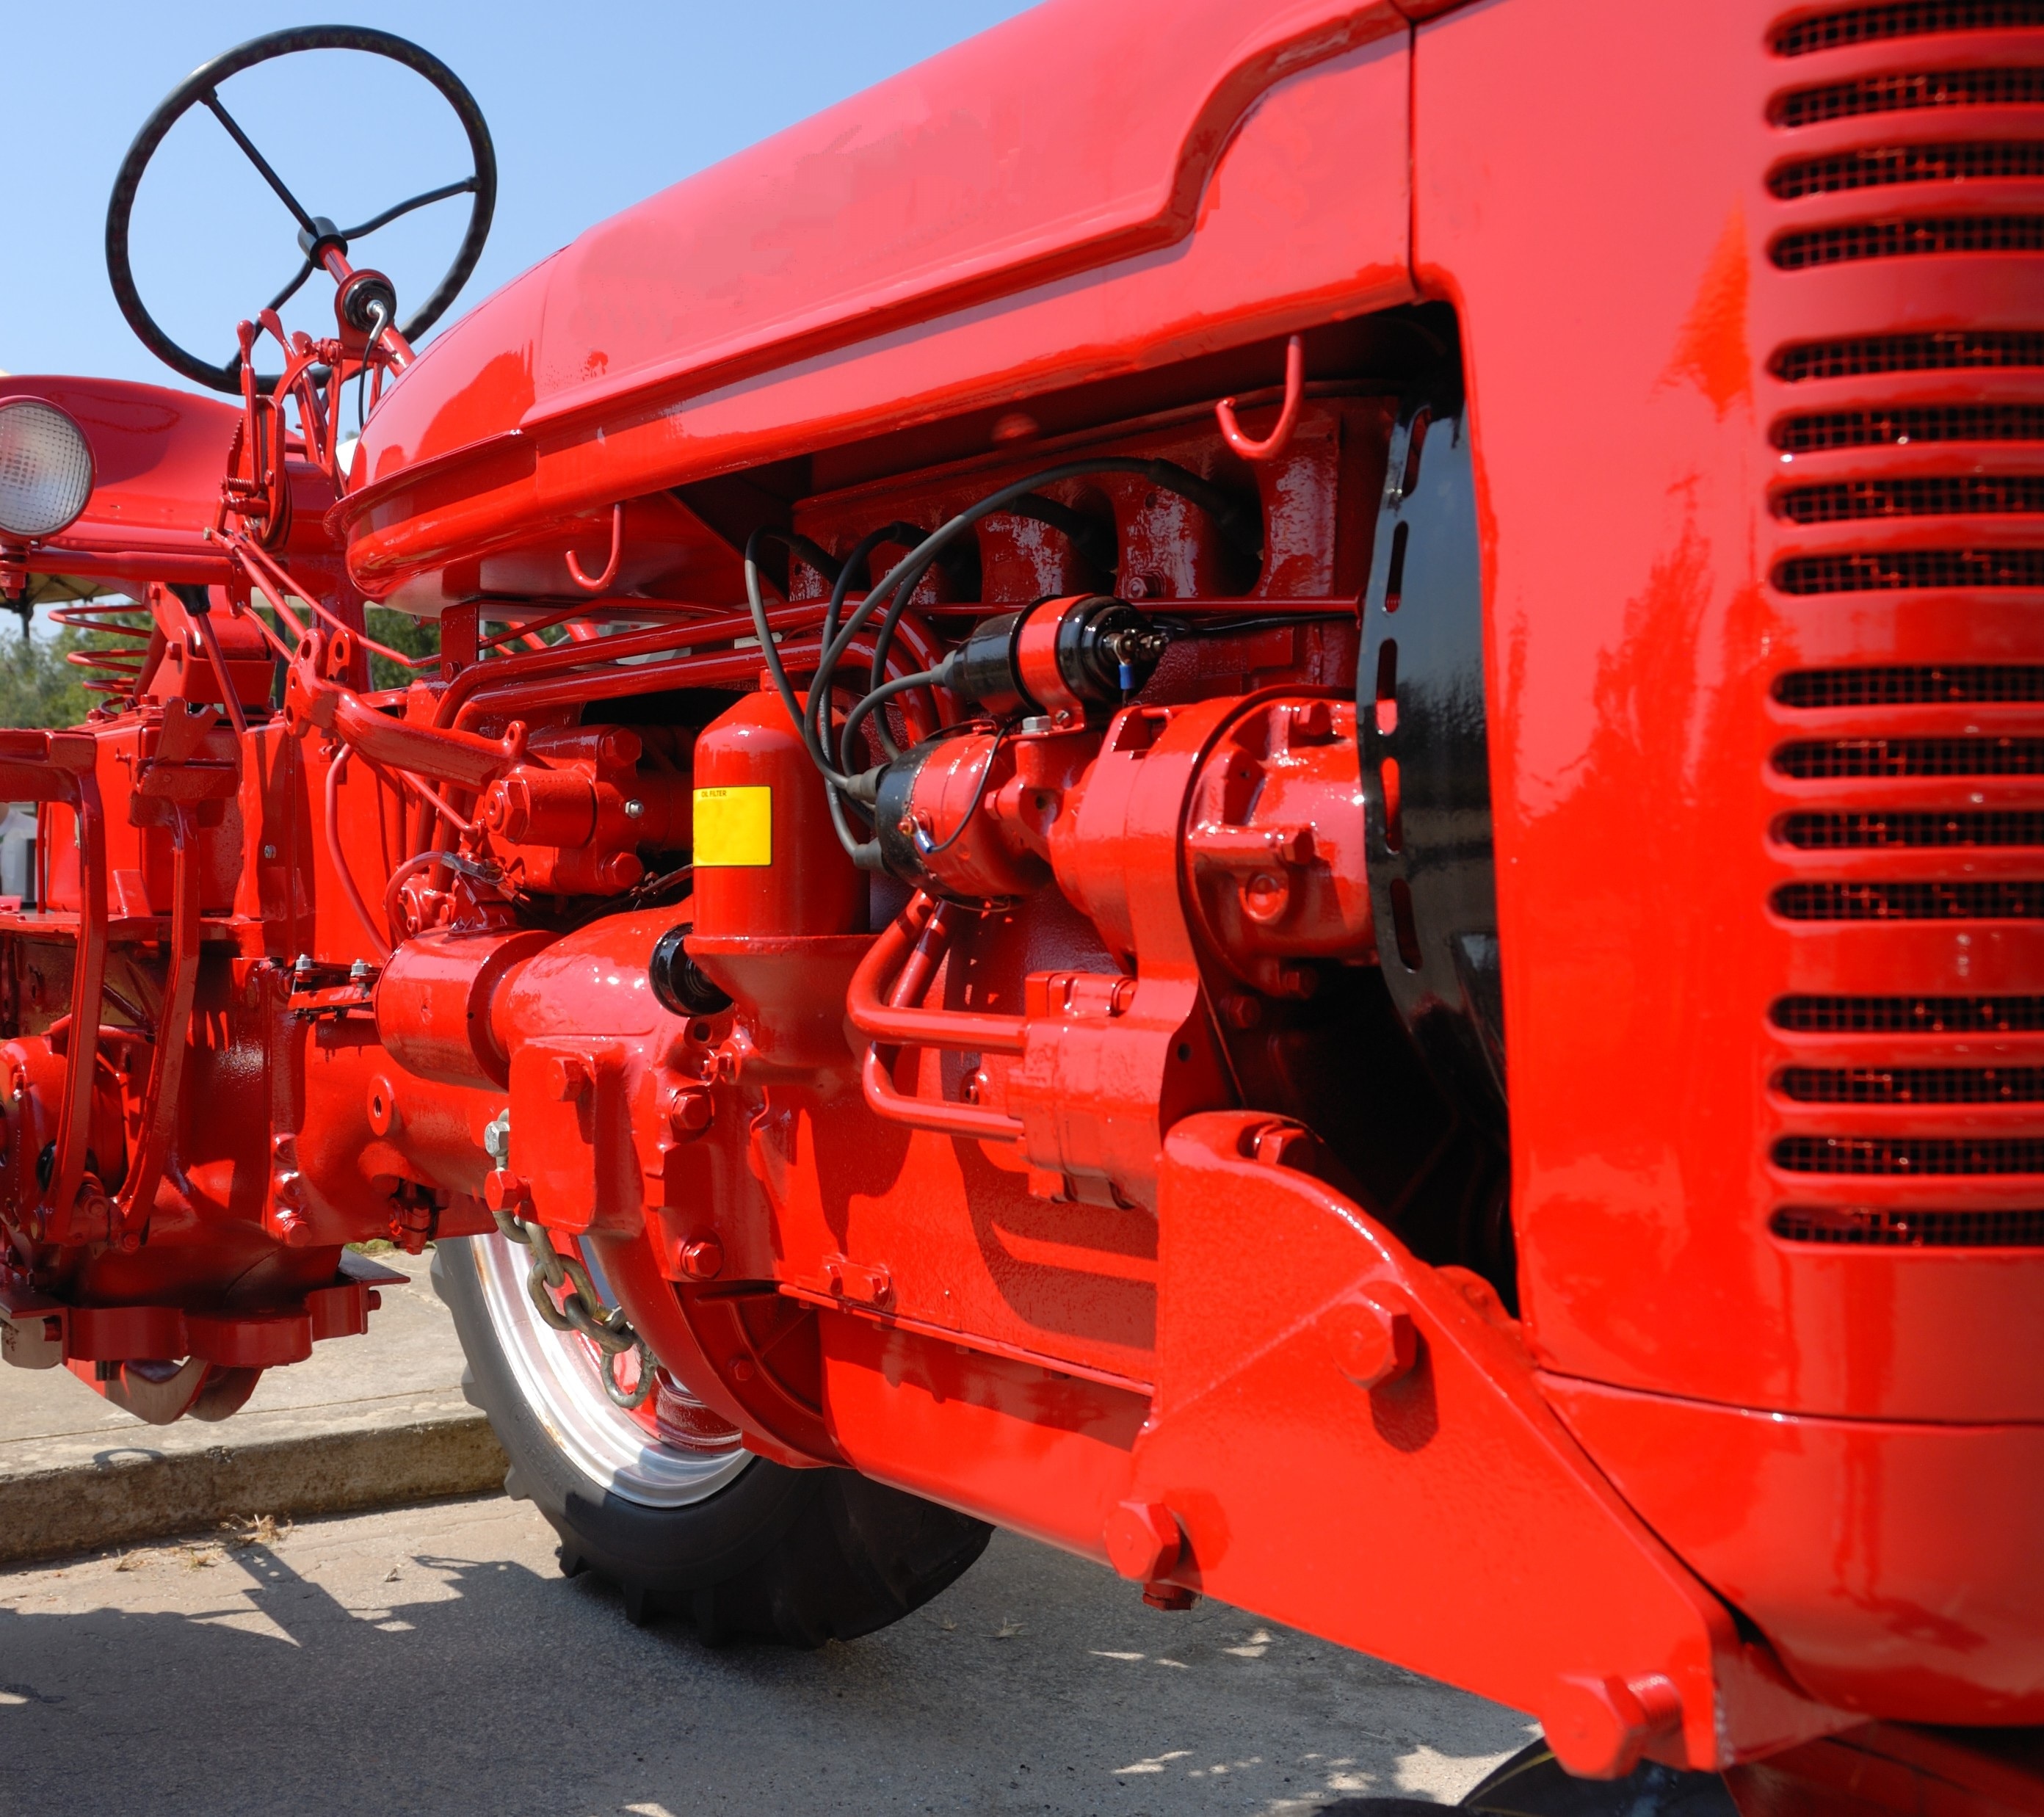 Моторно тракторное. Двигатель трактора. Дизельный двигатель трактора. Тракторный дизель. Красный трактор.